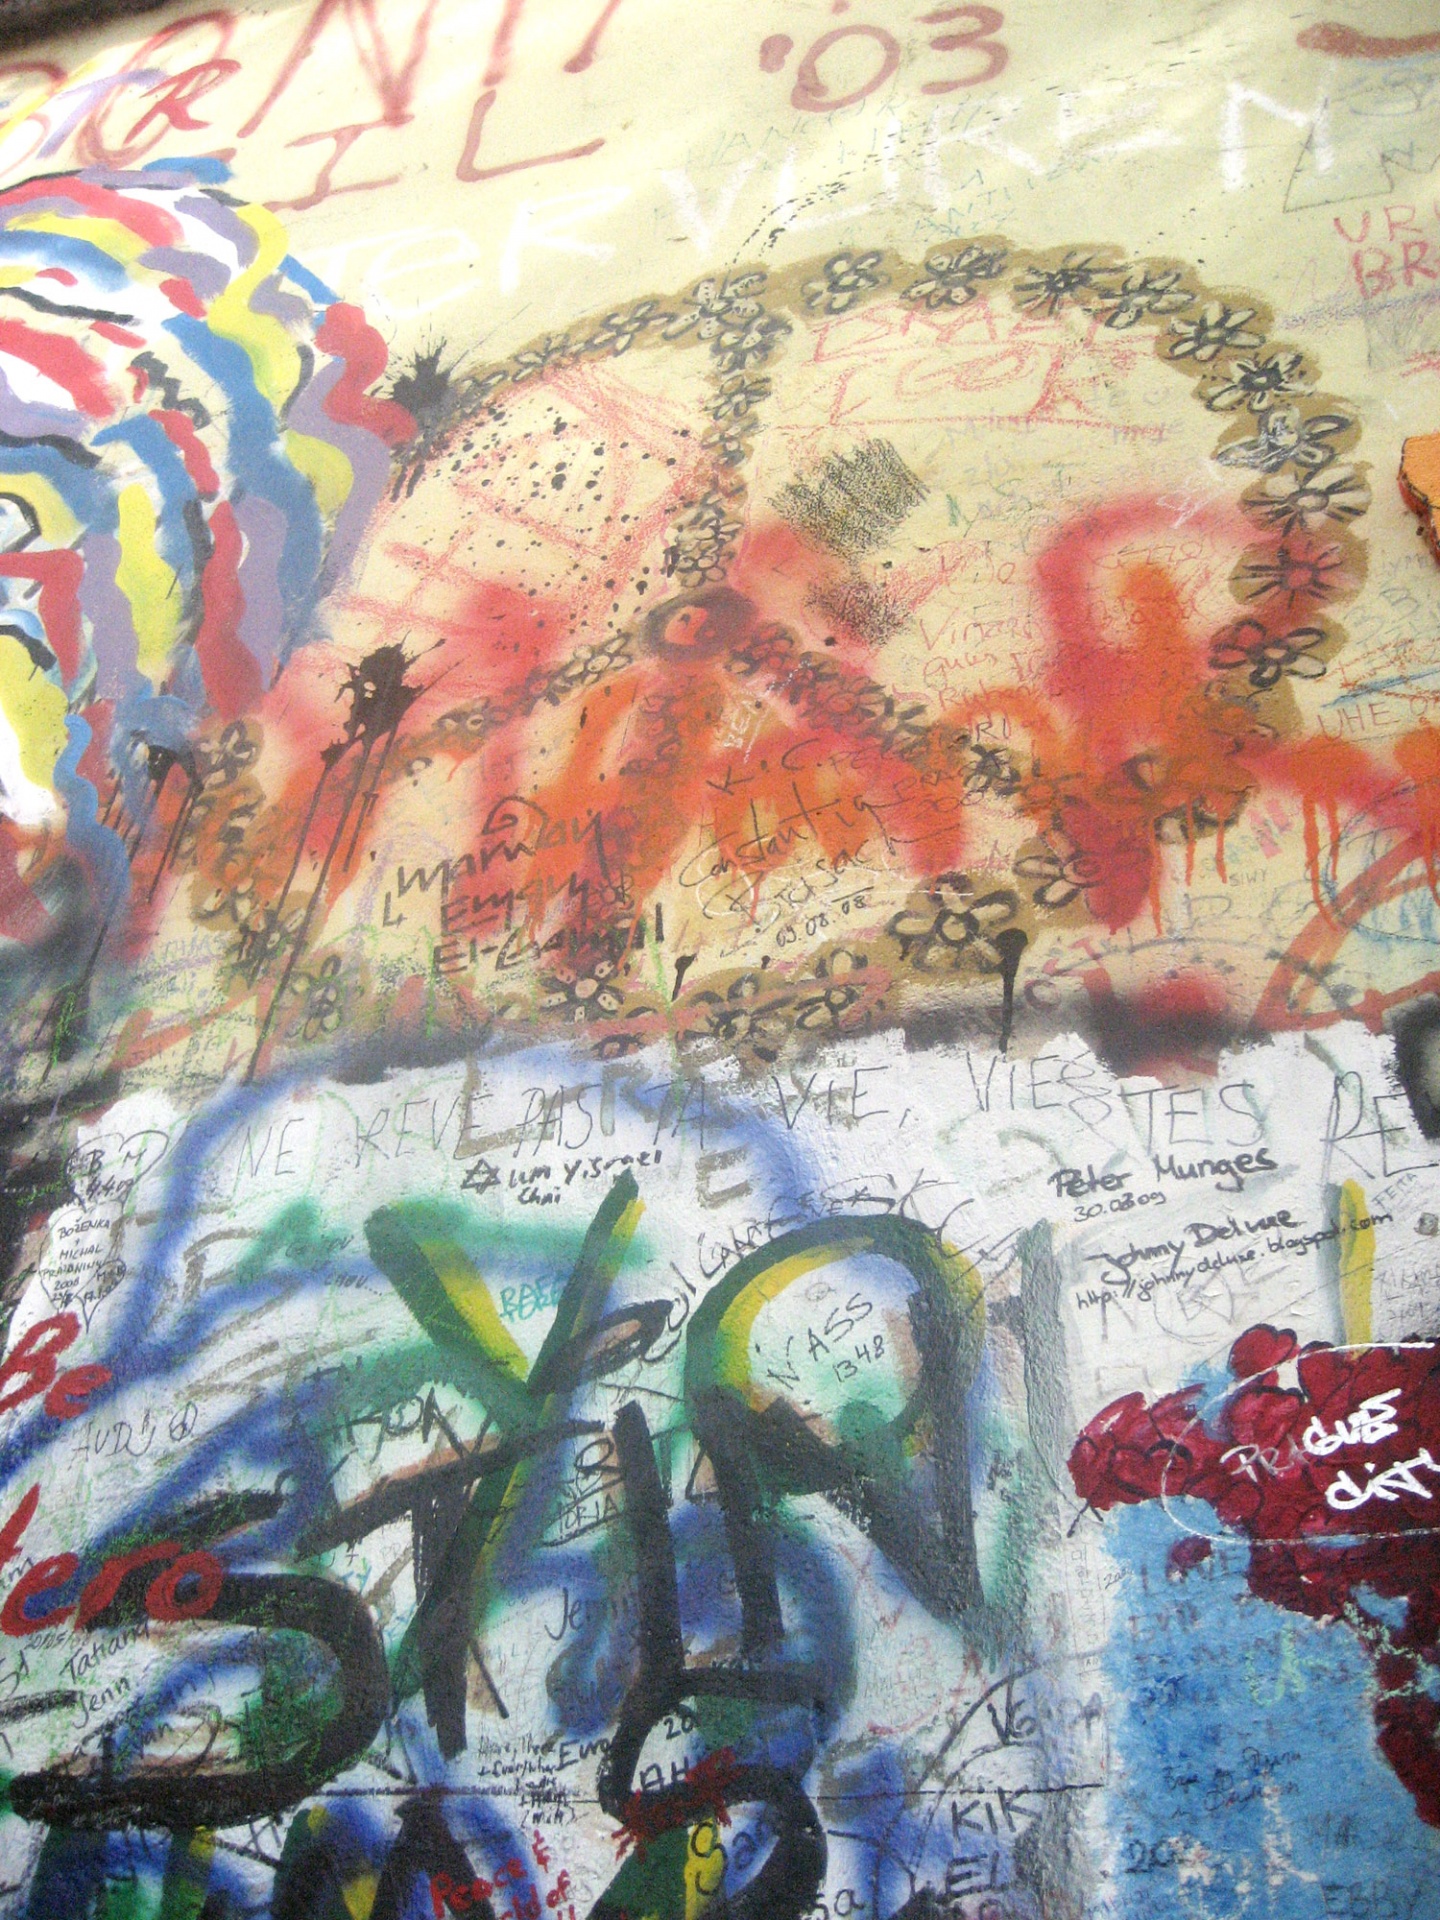 Graffiti Peace